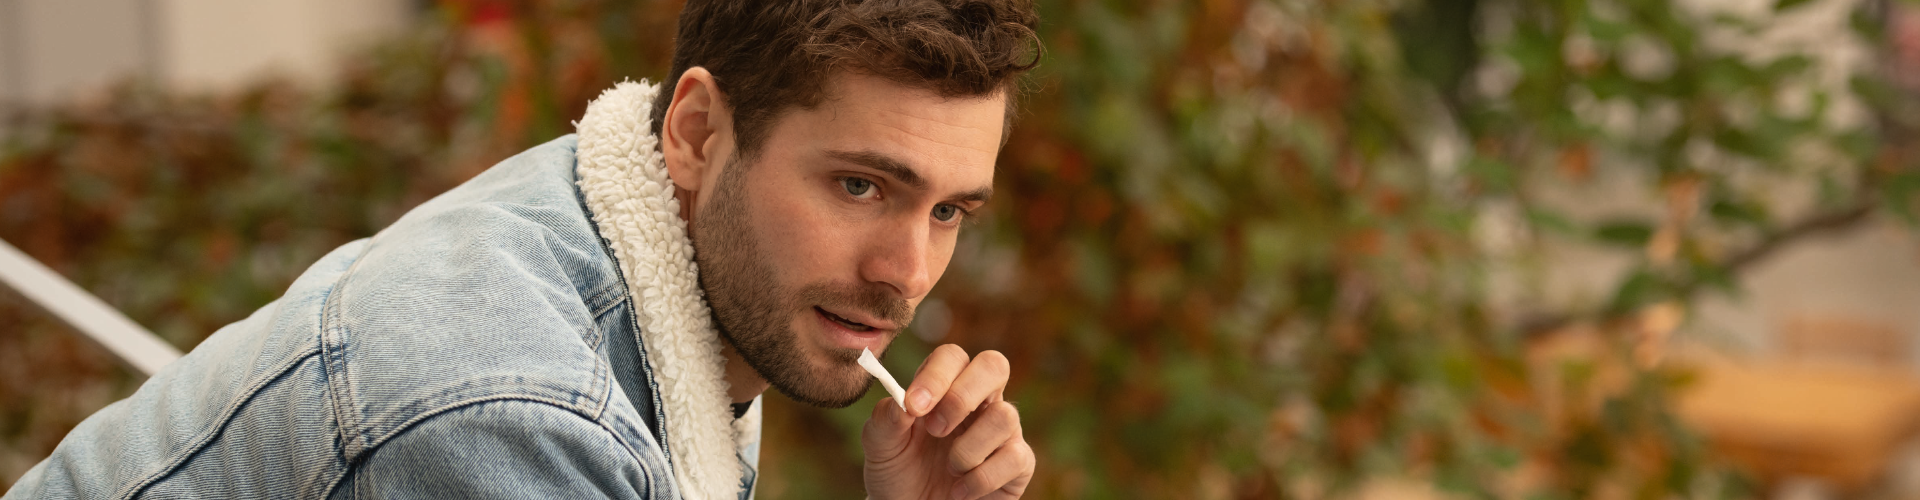 Un homme consomme un sachet de nicotine assis sur un banc